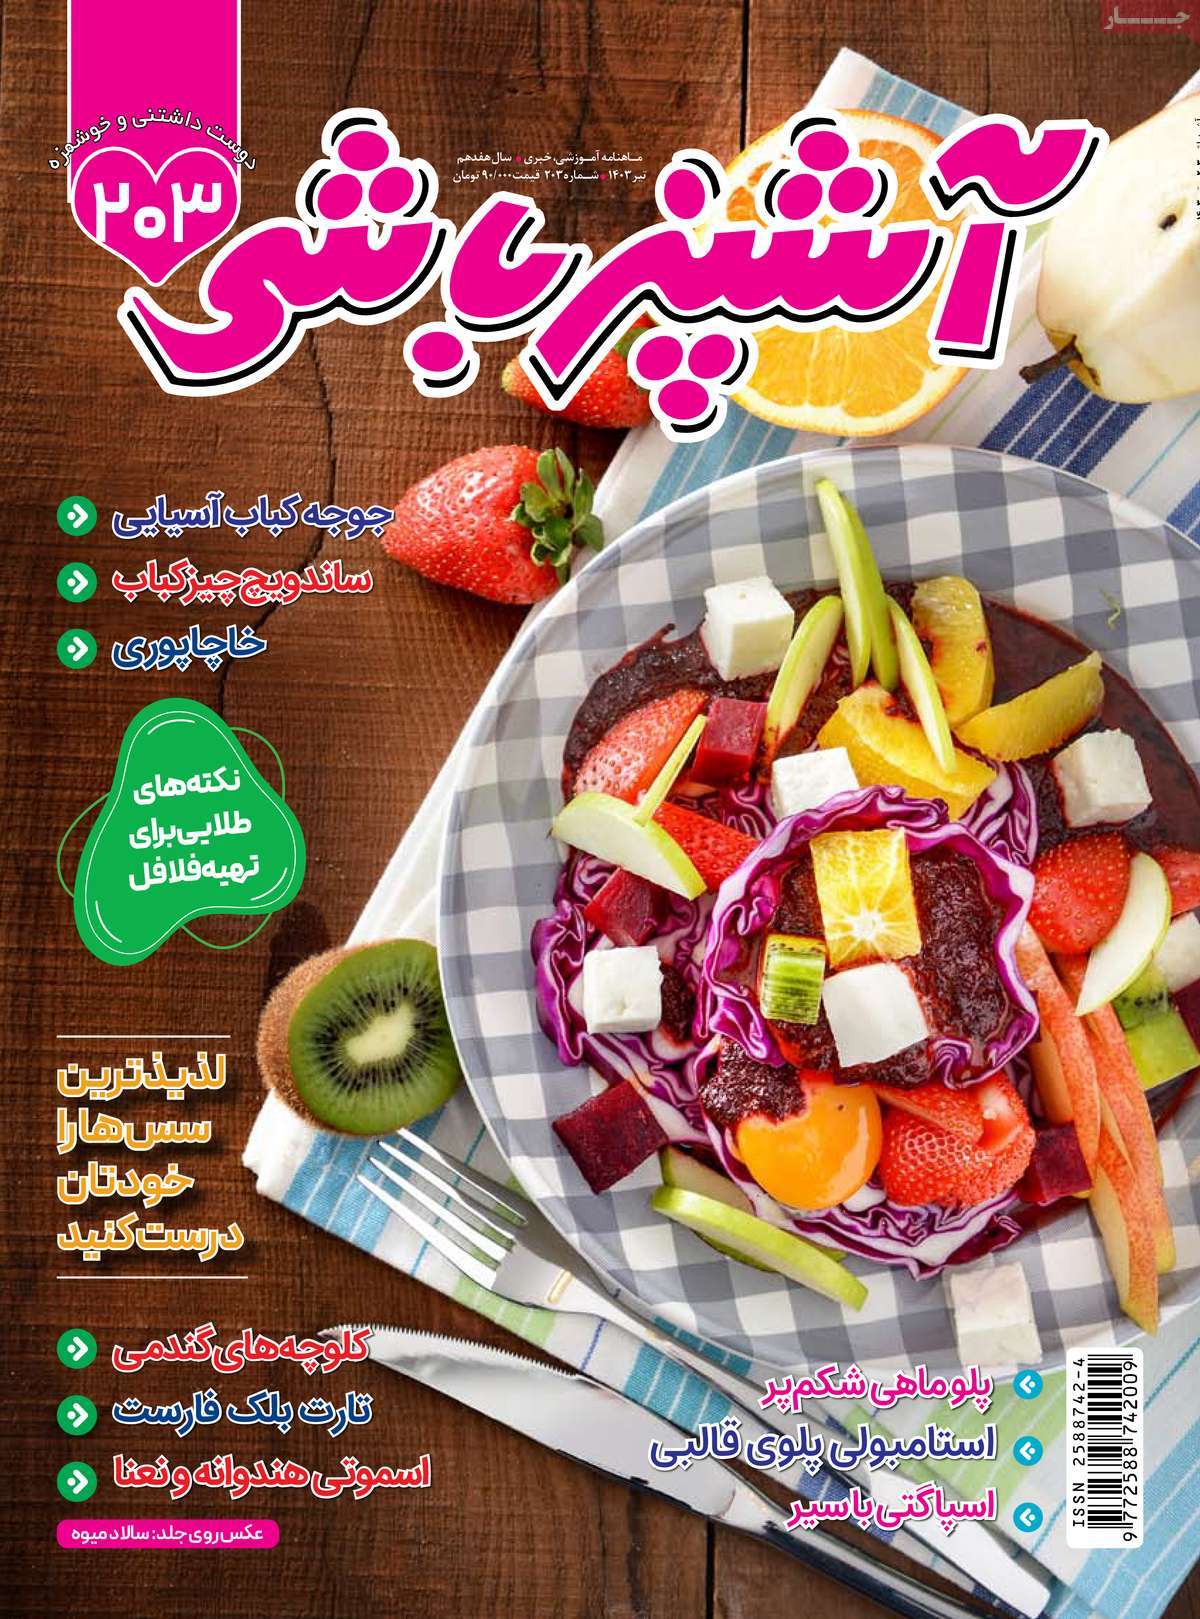 صفحه اول مجله آشپزباشی